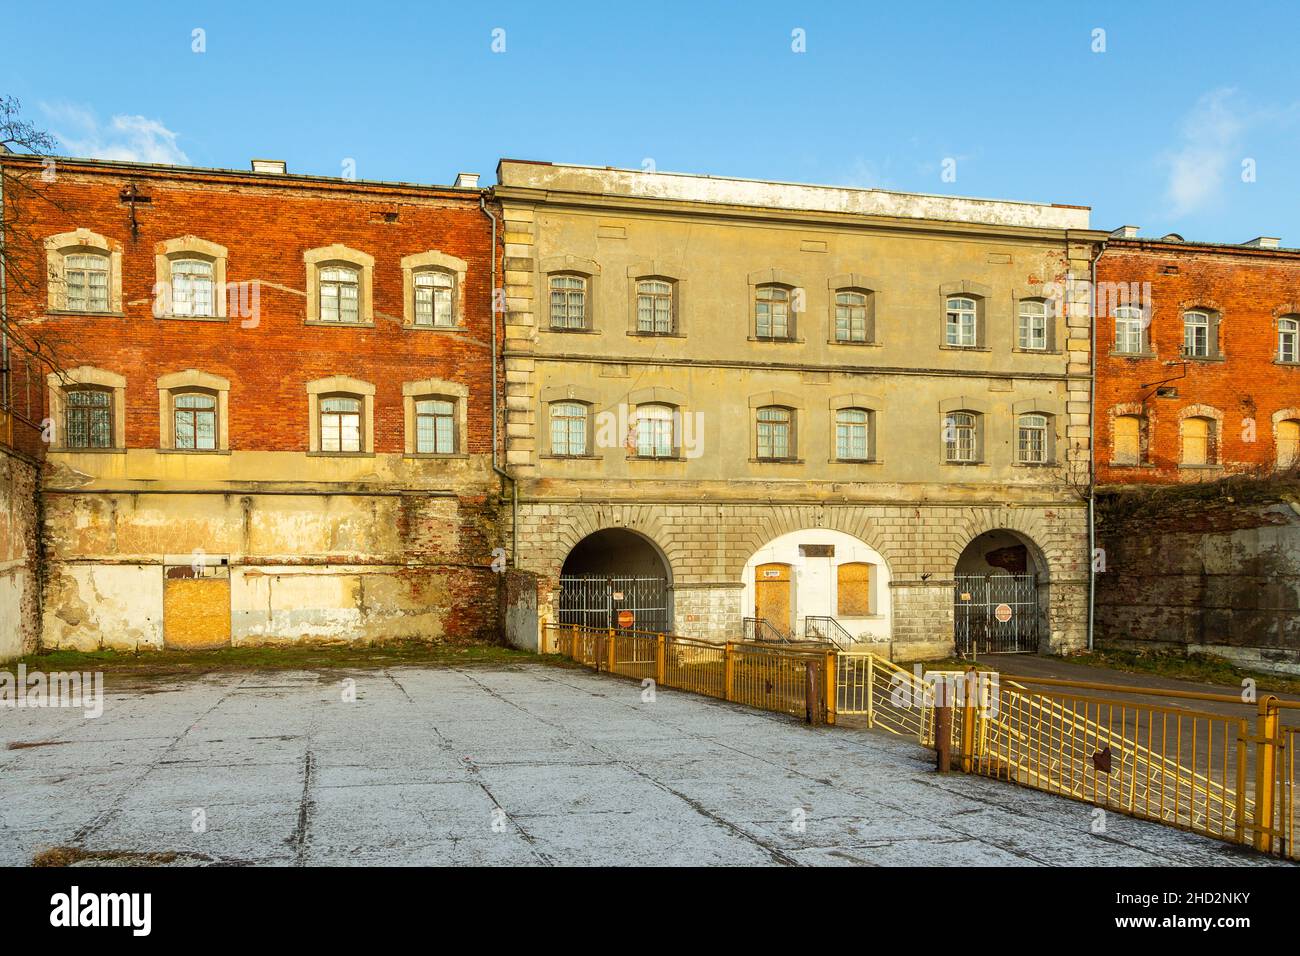 Nowy Dwor Mazowiecki, Polen - 05. Februar 2018: Die Festung Modlin, eine der größten Festungen aus dem 19th. Jahrhundert in Polen. Sonniger Wintertag. Stockfoto